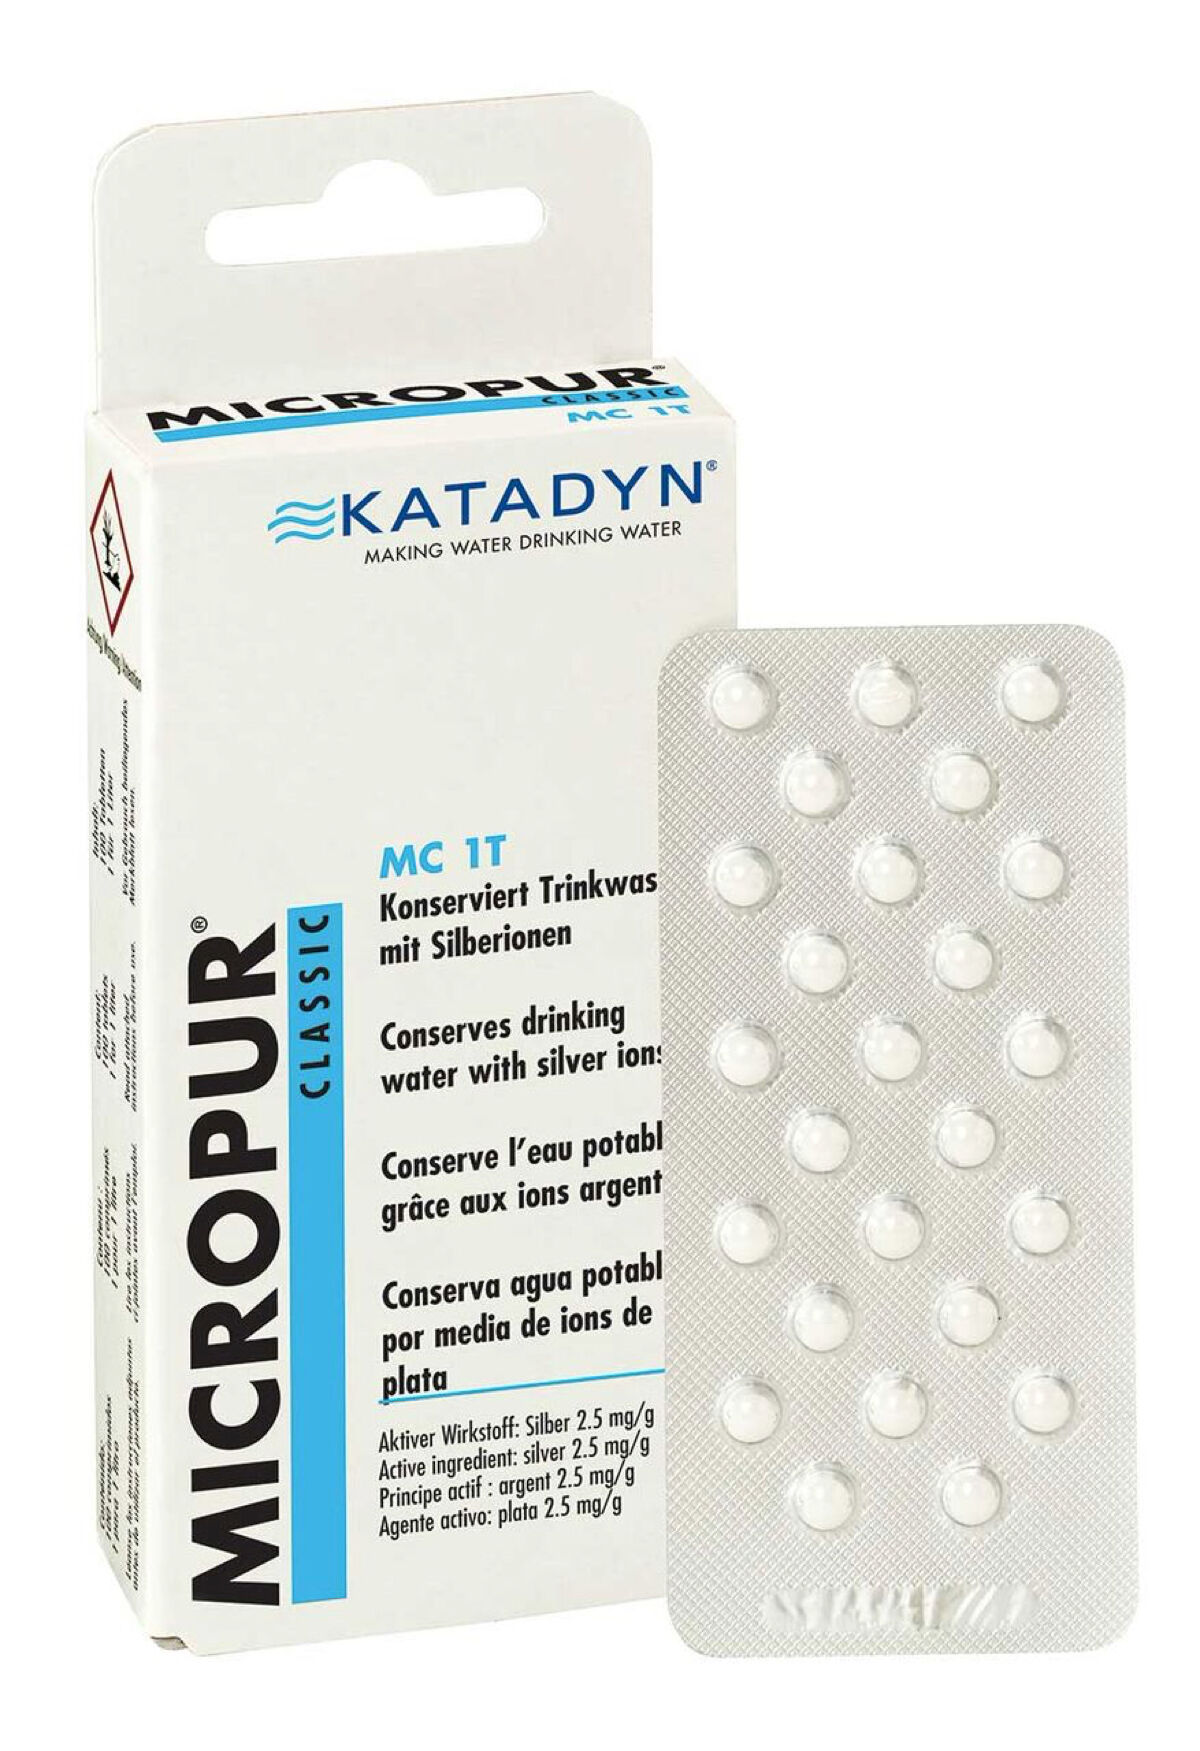 Katadyn Micropur Classic MC 1T (100) - Vesisuodatin